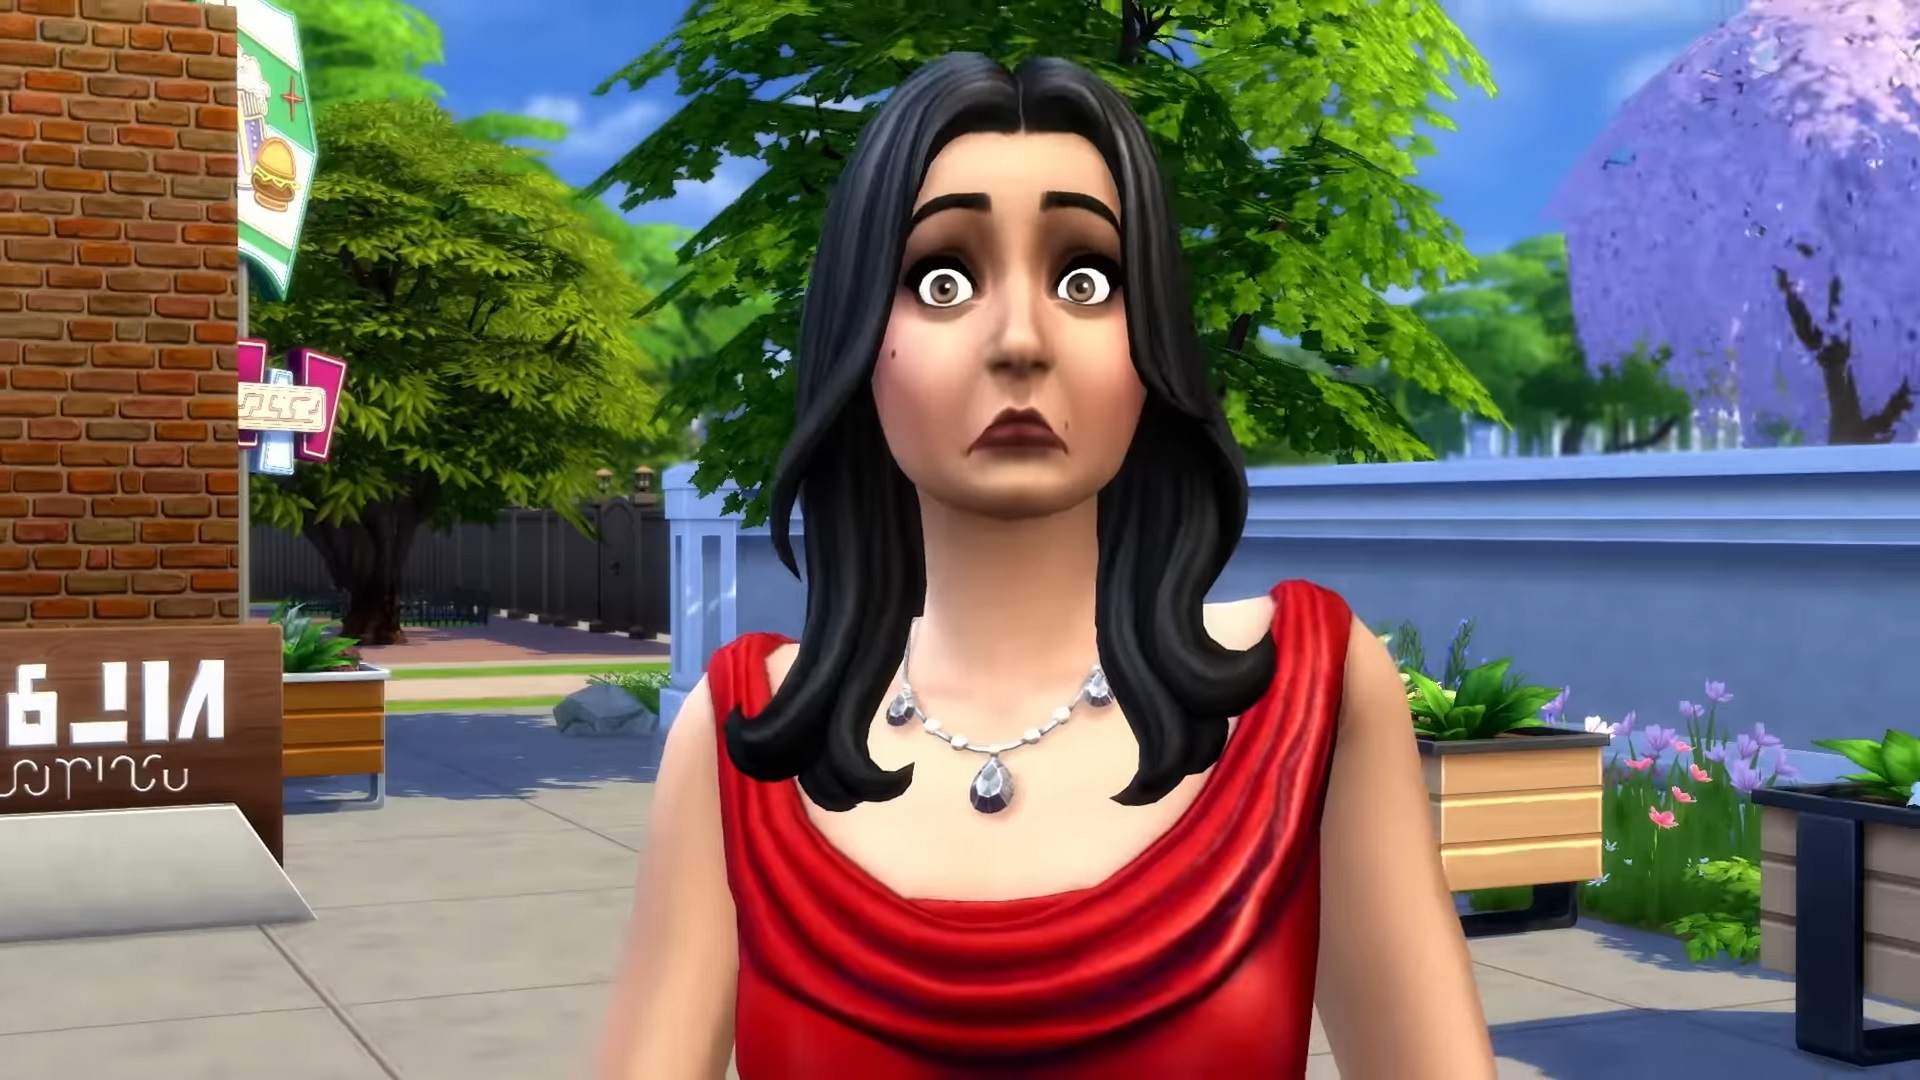 Ça y est ! Les Sims 4 sont jouables gratuitement... et Maxis en a profité pour teaser les joueurs